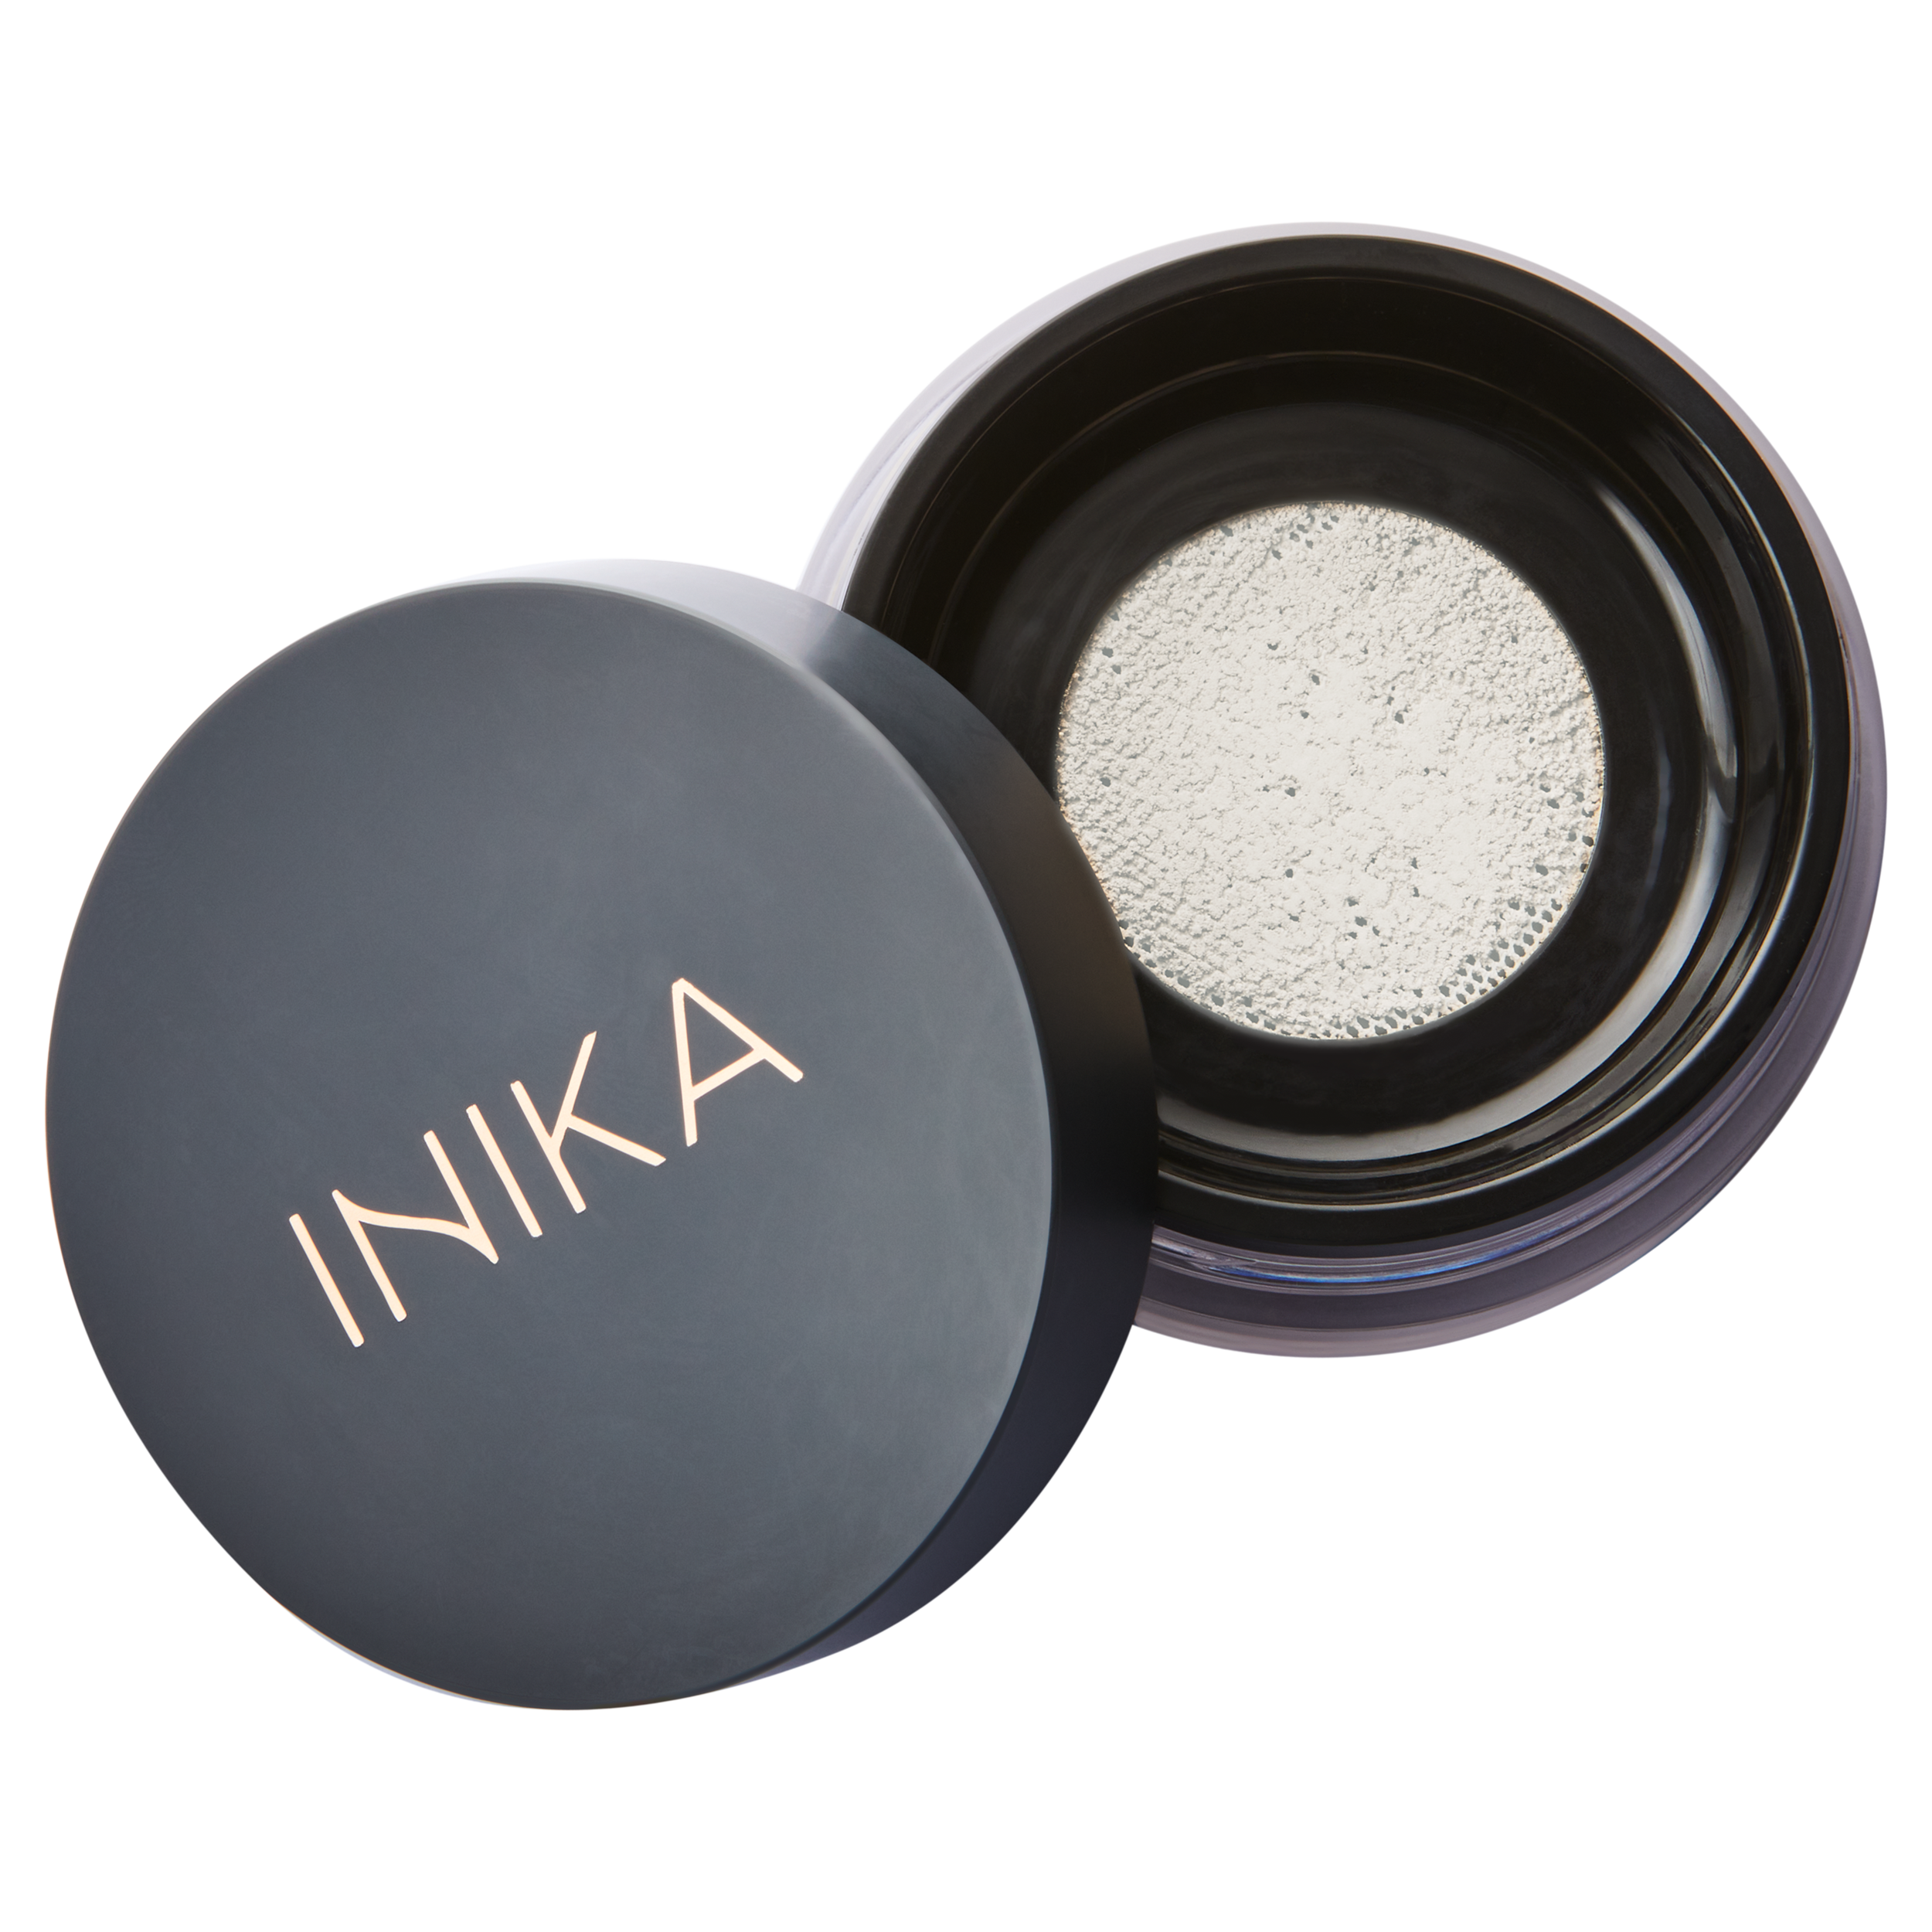 INIKA Organic Mineral Setting Powder